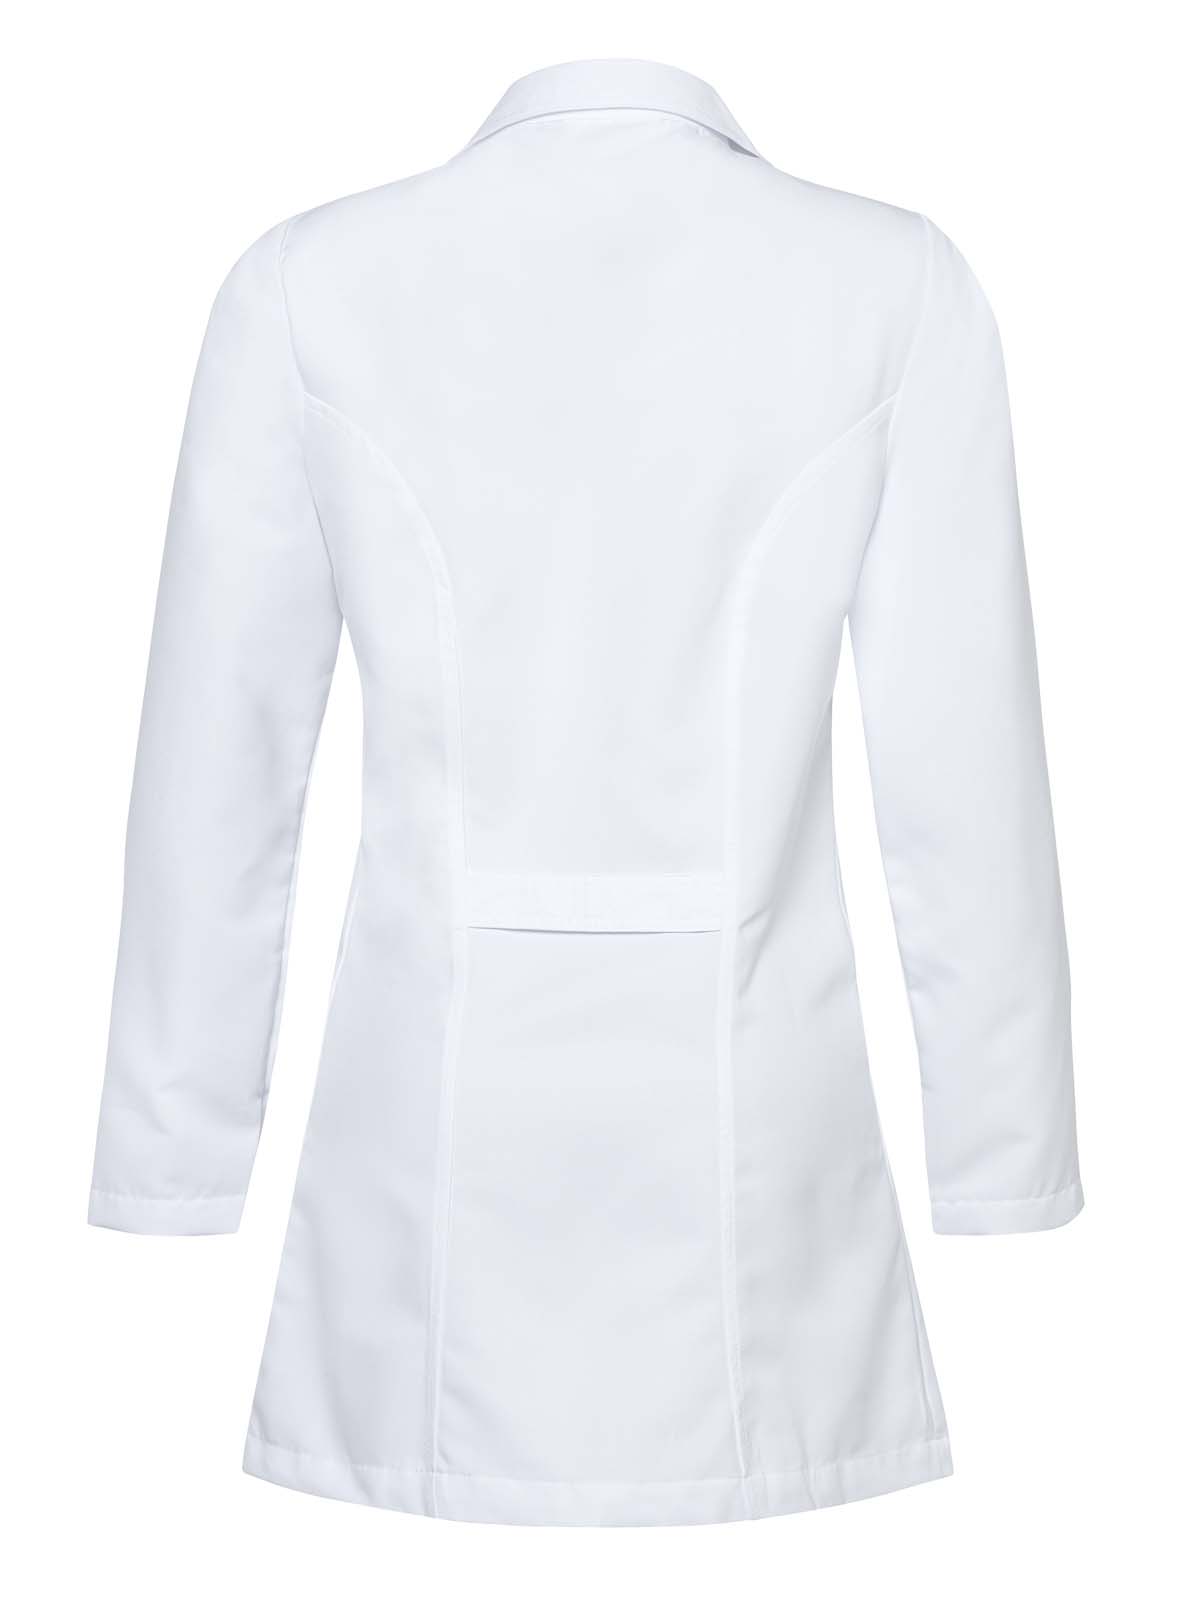 Industrial white coat for men